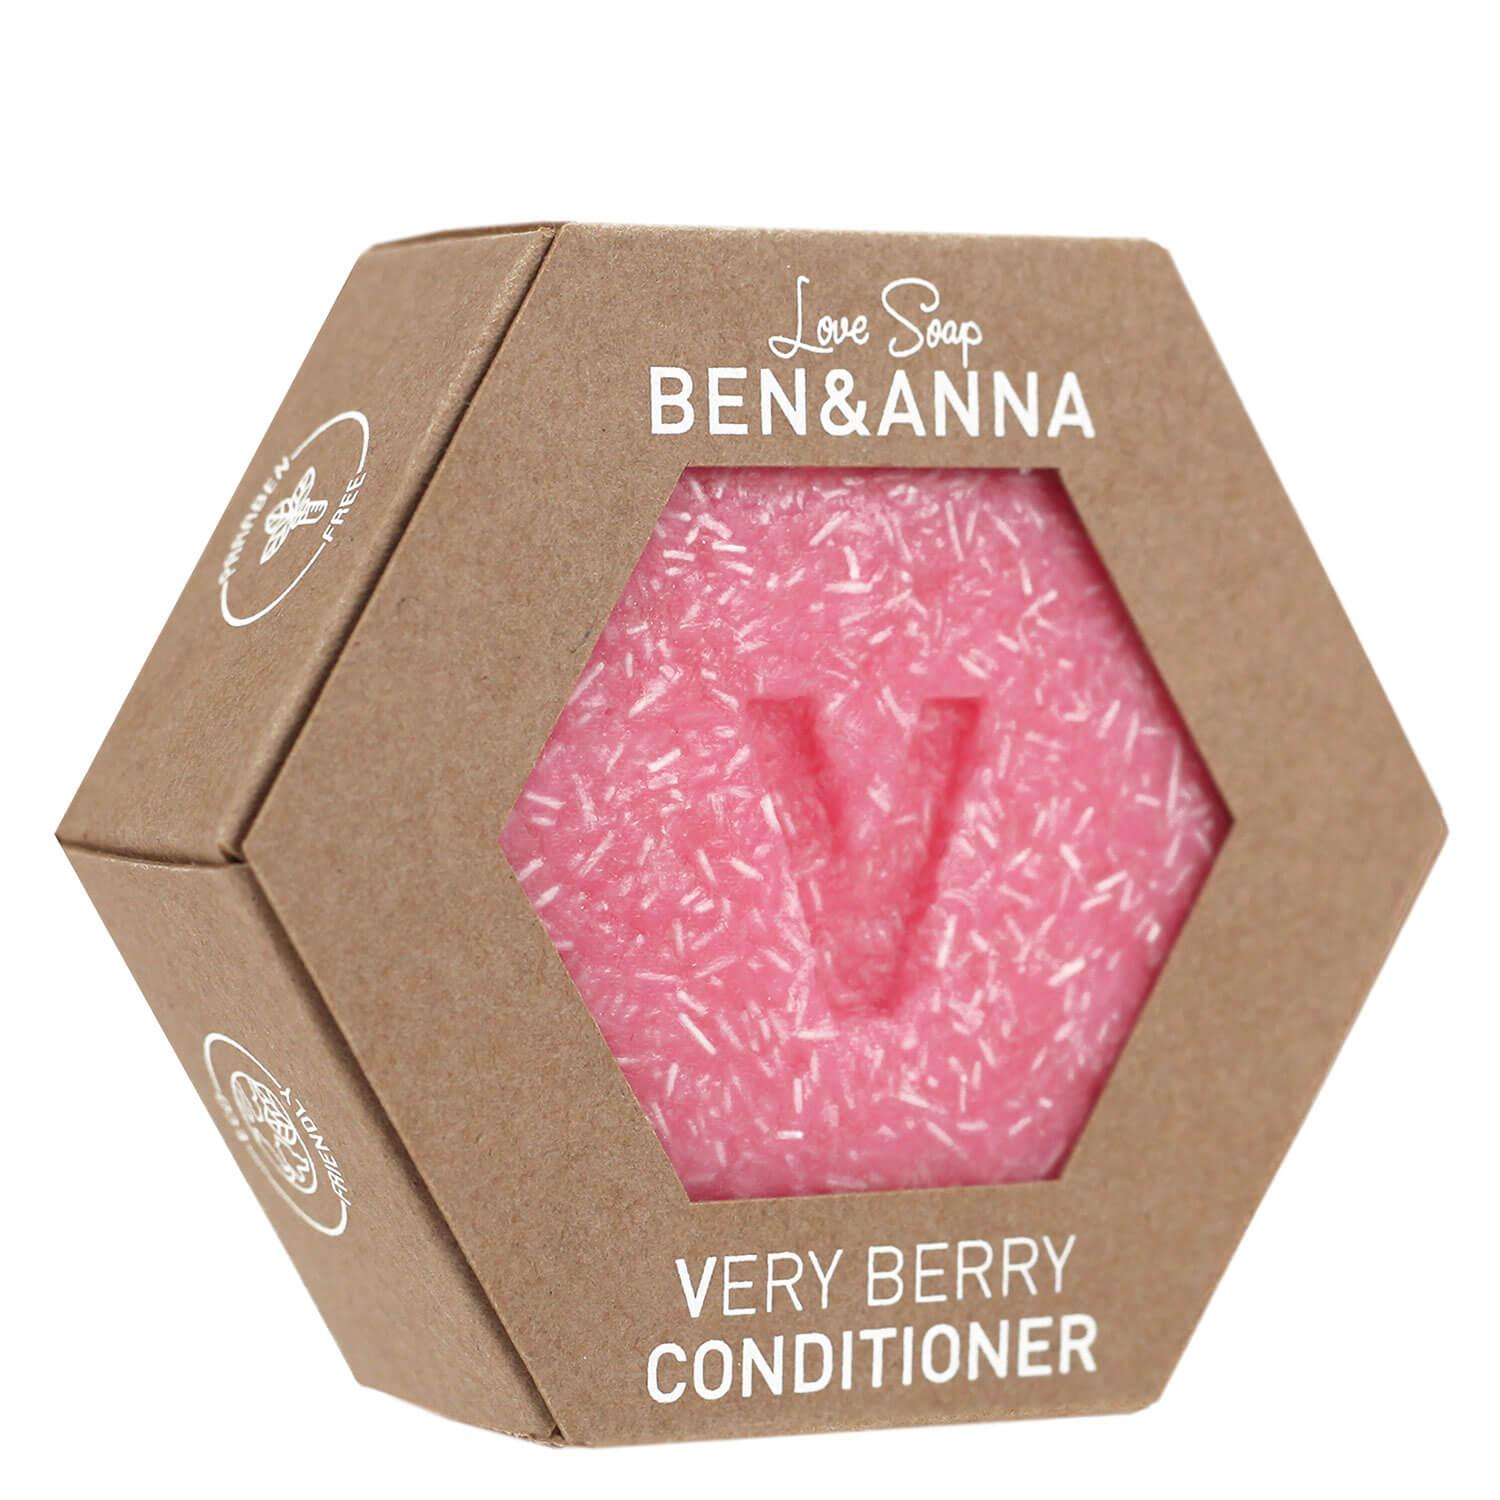 BEN&ANNA - Verry Berry Conditioner